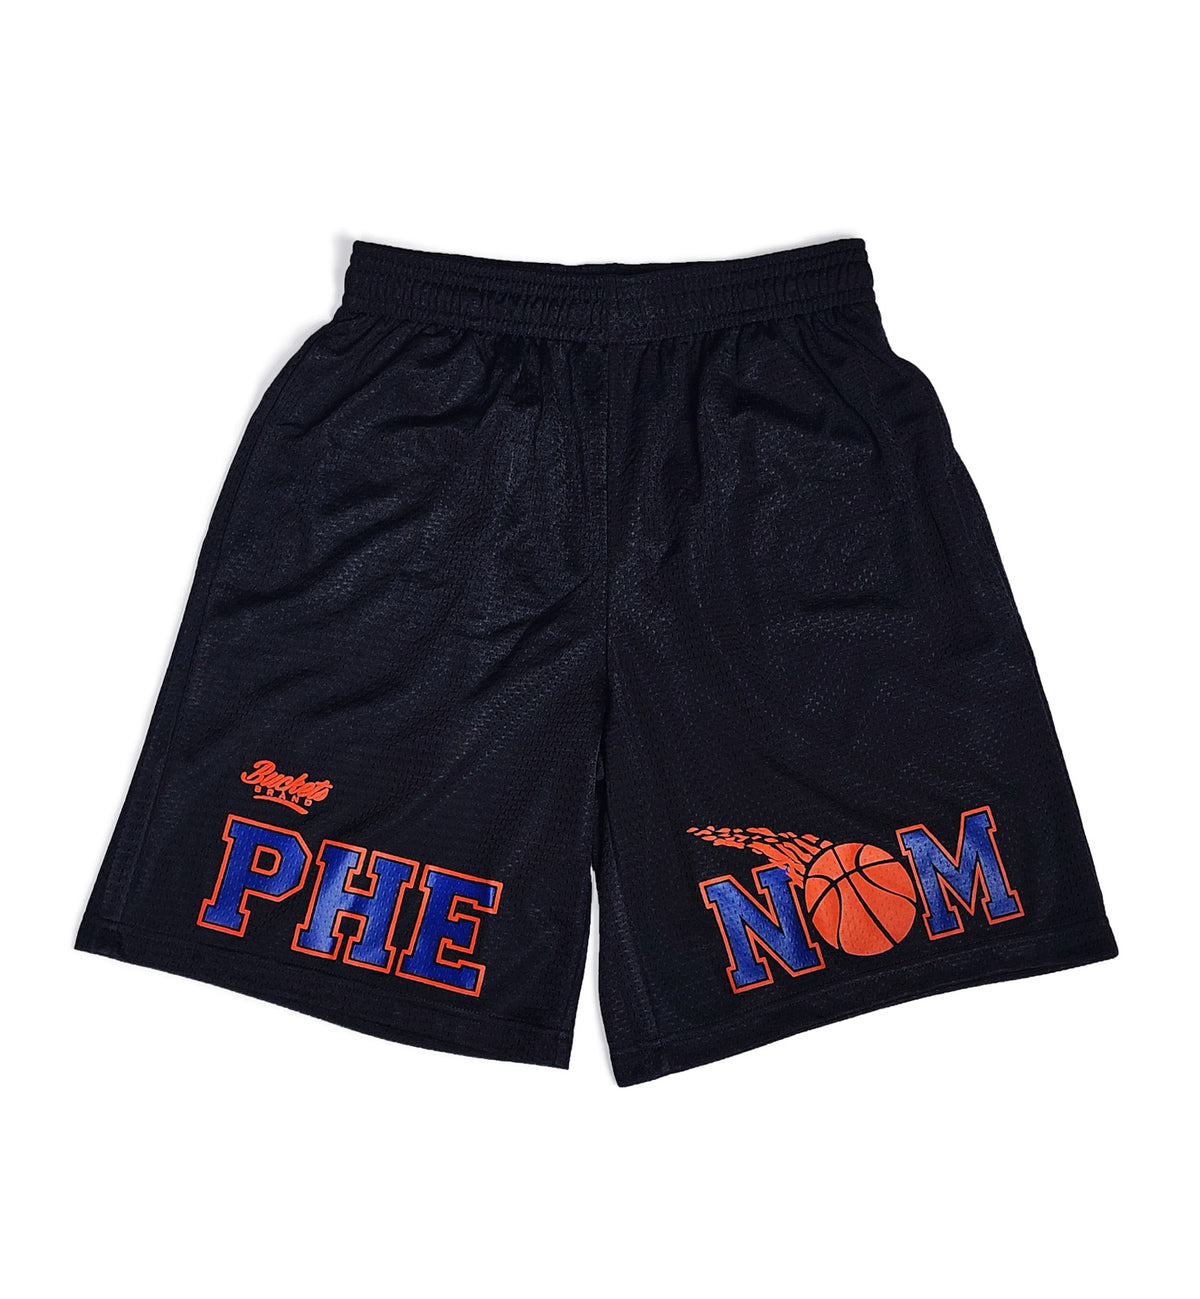 Phenom Split Shorts - Black